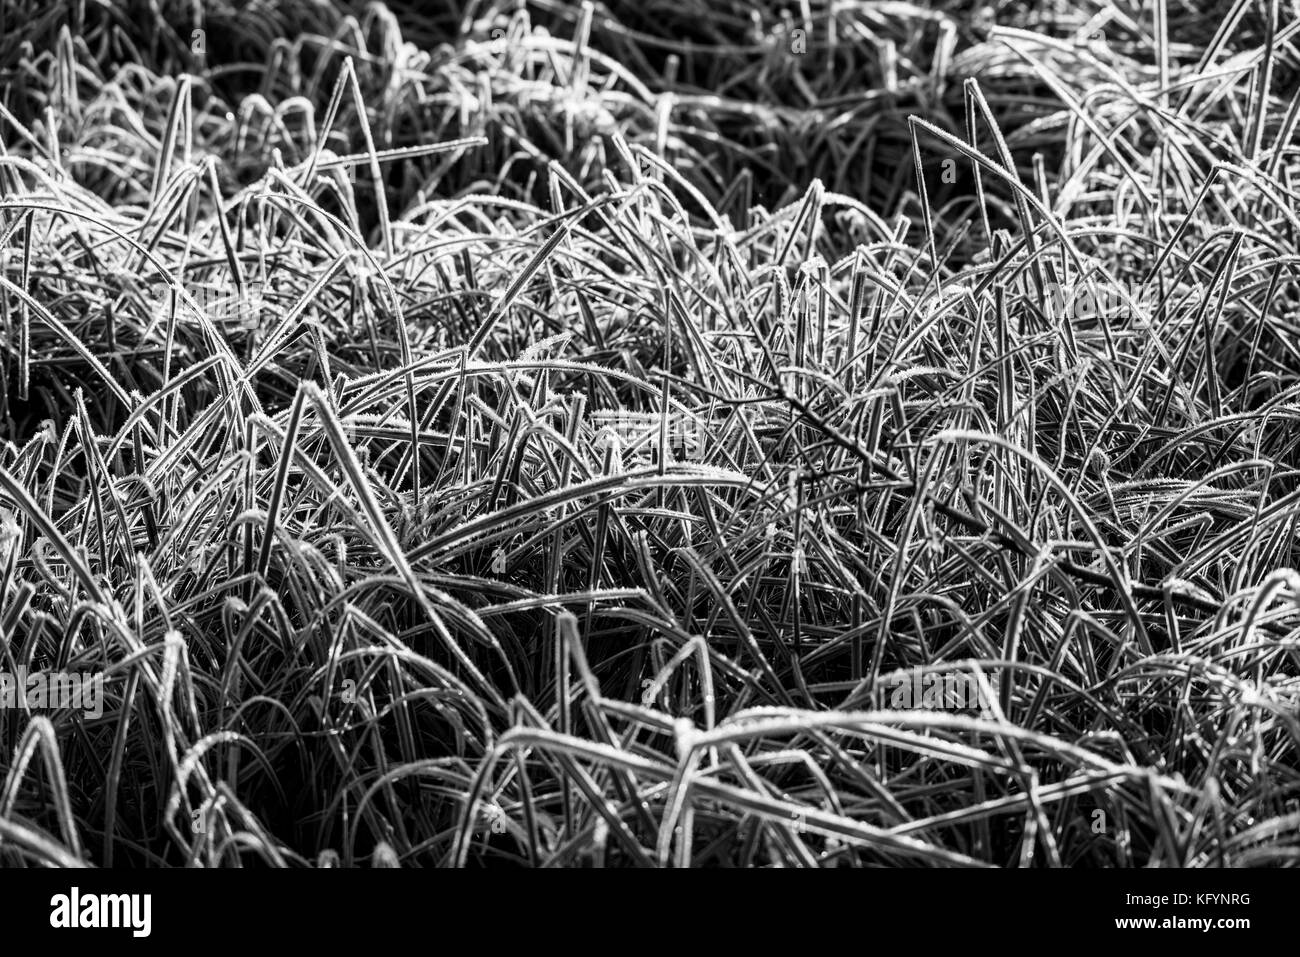 Frosttracerie. Eine Untersuchung des Frosts an Blättern, Zweigen und Grasstämmen. Der Winter verstärkt die Schönheit der Natur, da der Wasserdampf kondensiert und gefriert. Stockfoto